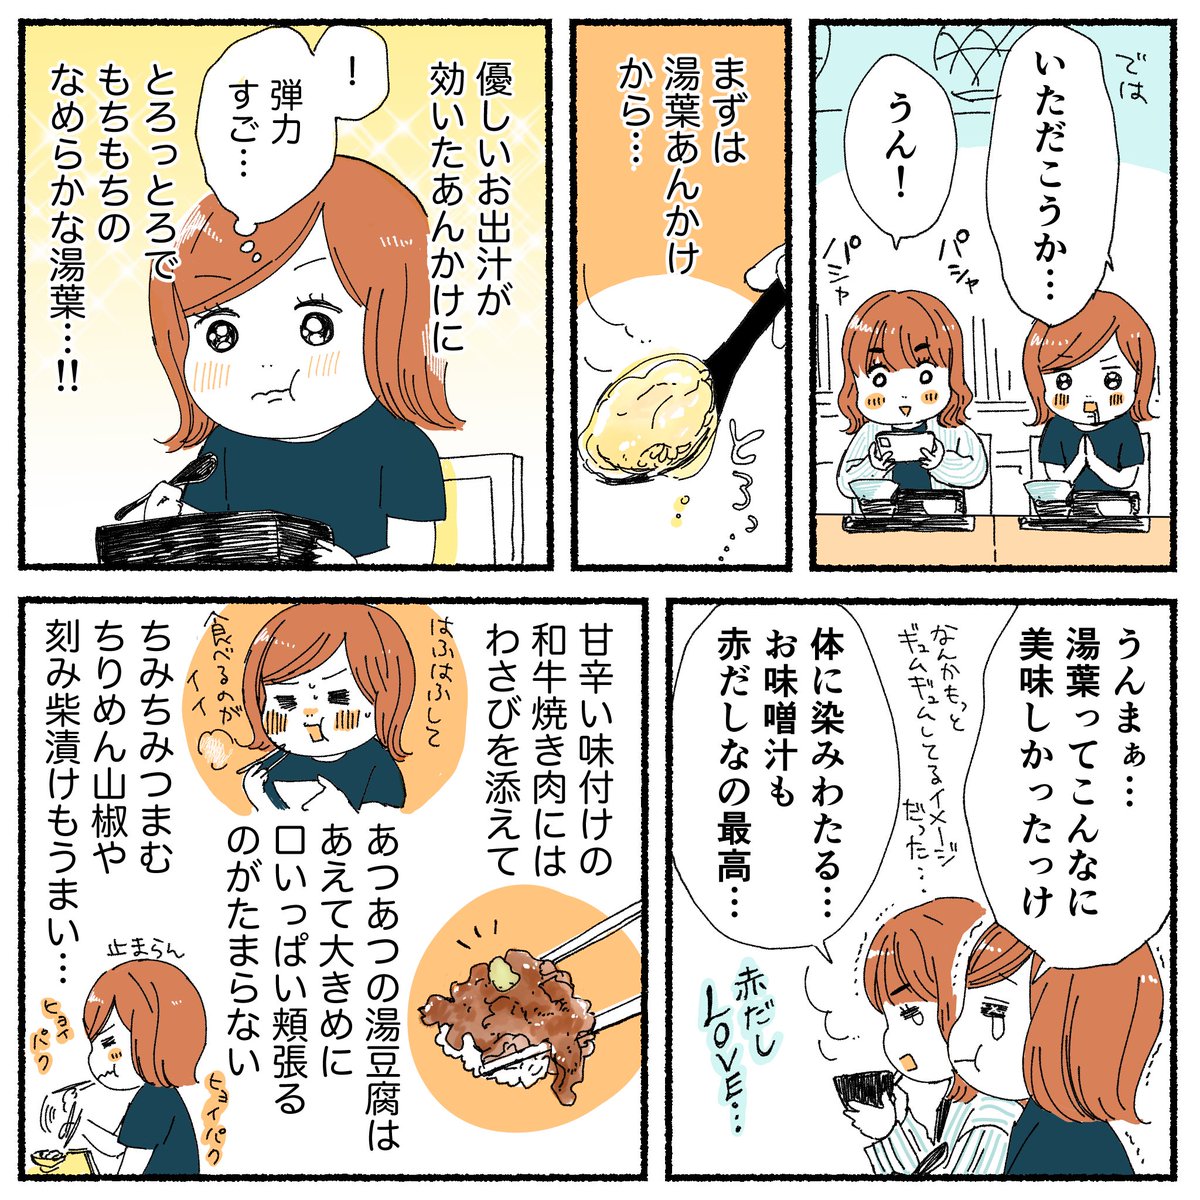 京都旅行レポ漫画、第3話の先読みを更新しました!
嵐山喜重郎でランチ&仁和寺。

漫画の続きはこちら↓
https://t.co/XfzrTMnCeJ 